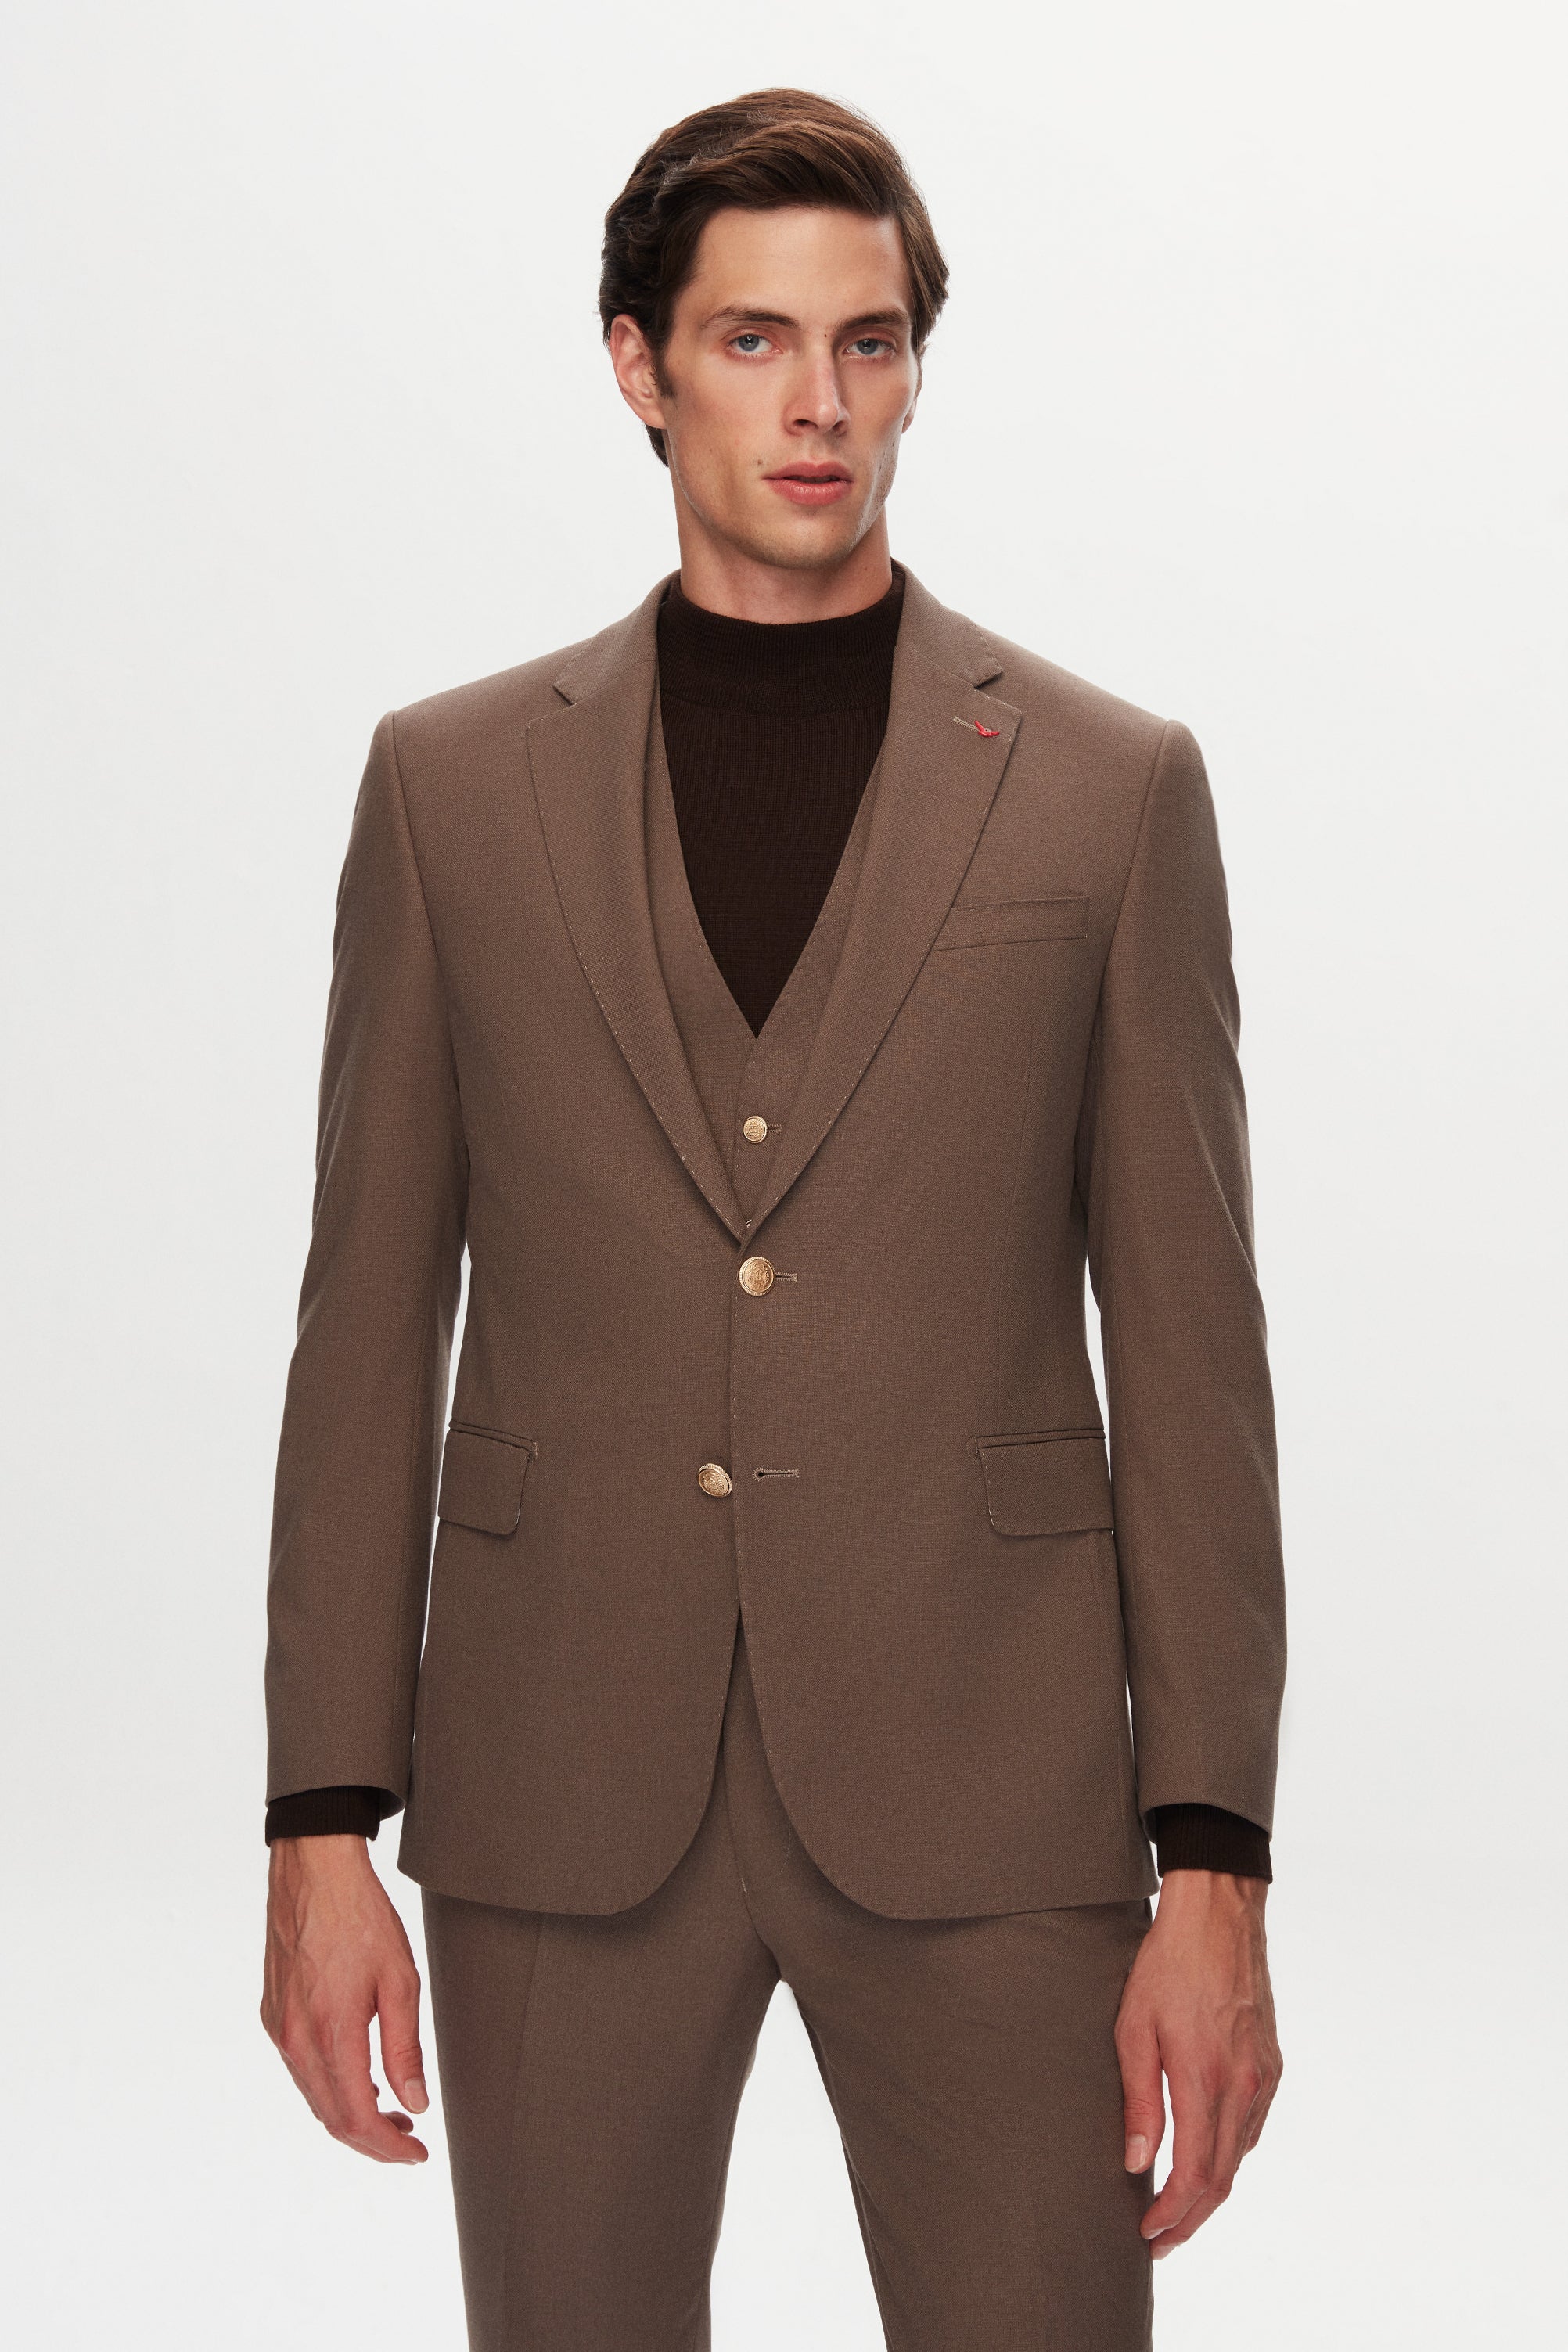 D's Dmat's 3-Piece Stylish Brown Suit